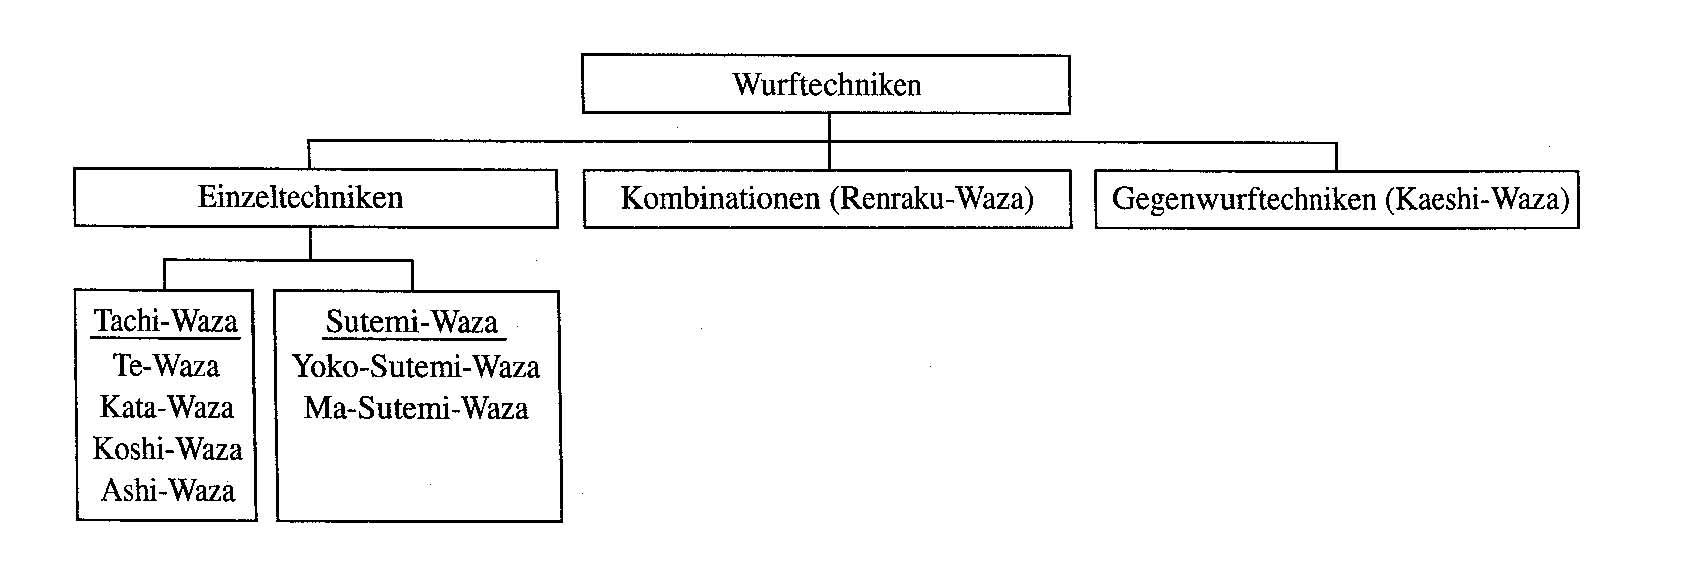 Wurftechnik (Nage-Waza)